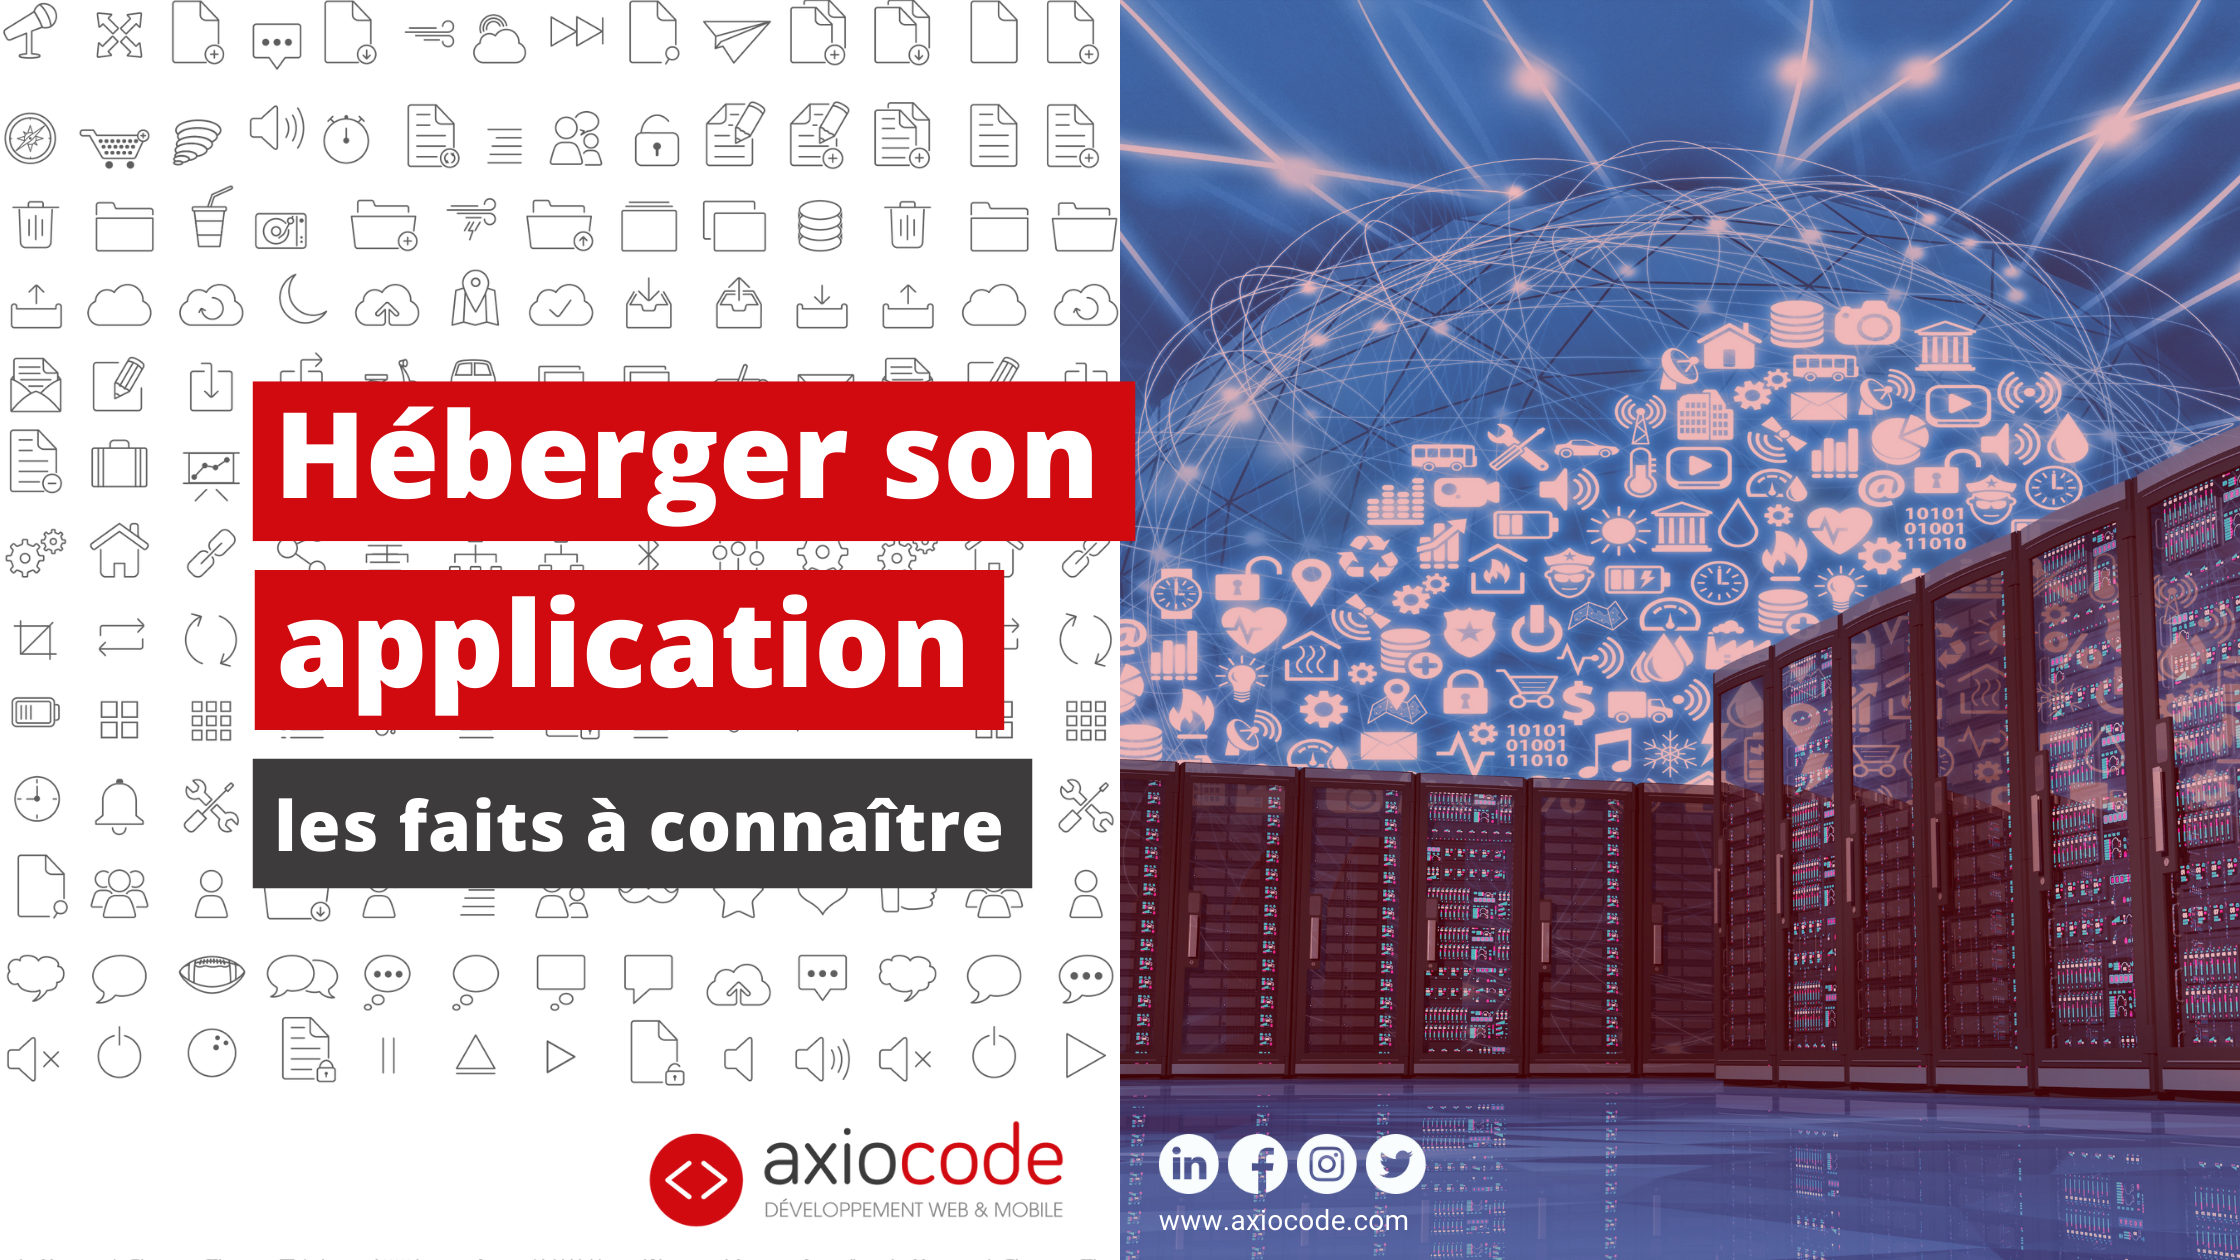 heberger-son-application-mobile